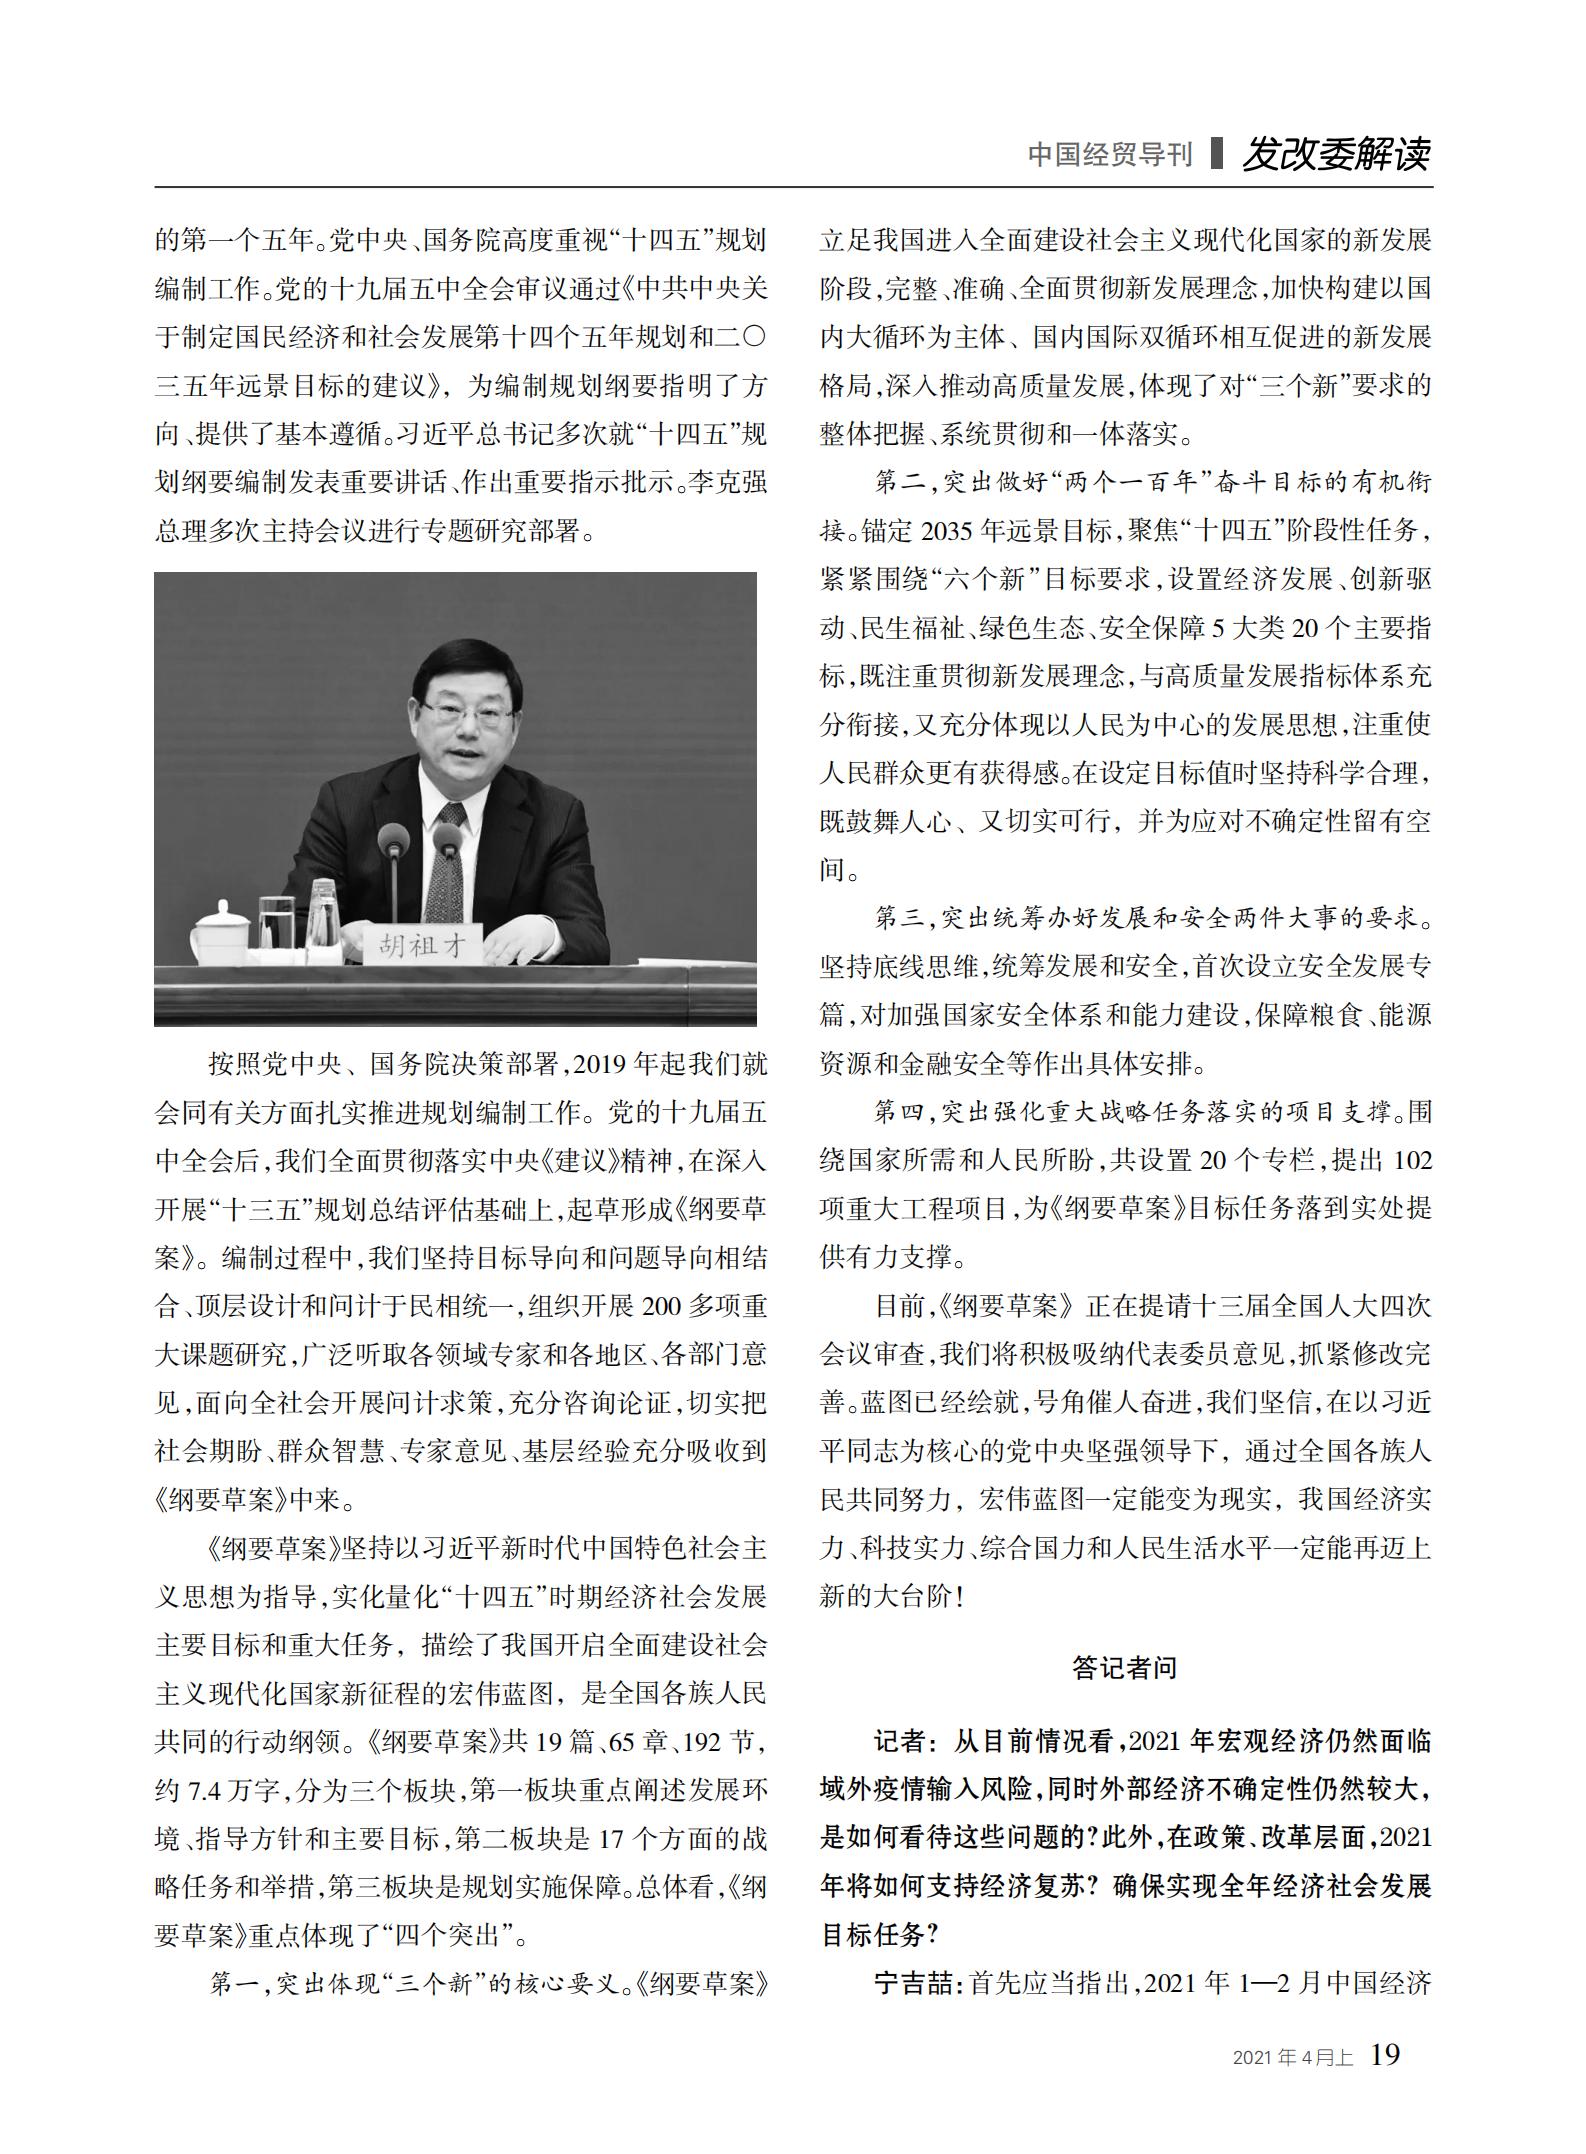 中国经贸导刊2021-4上印刷_18.jpg